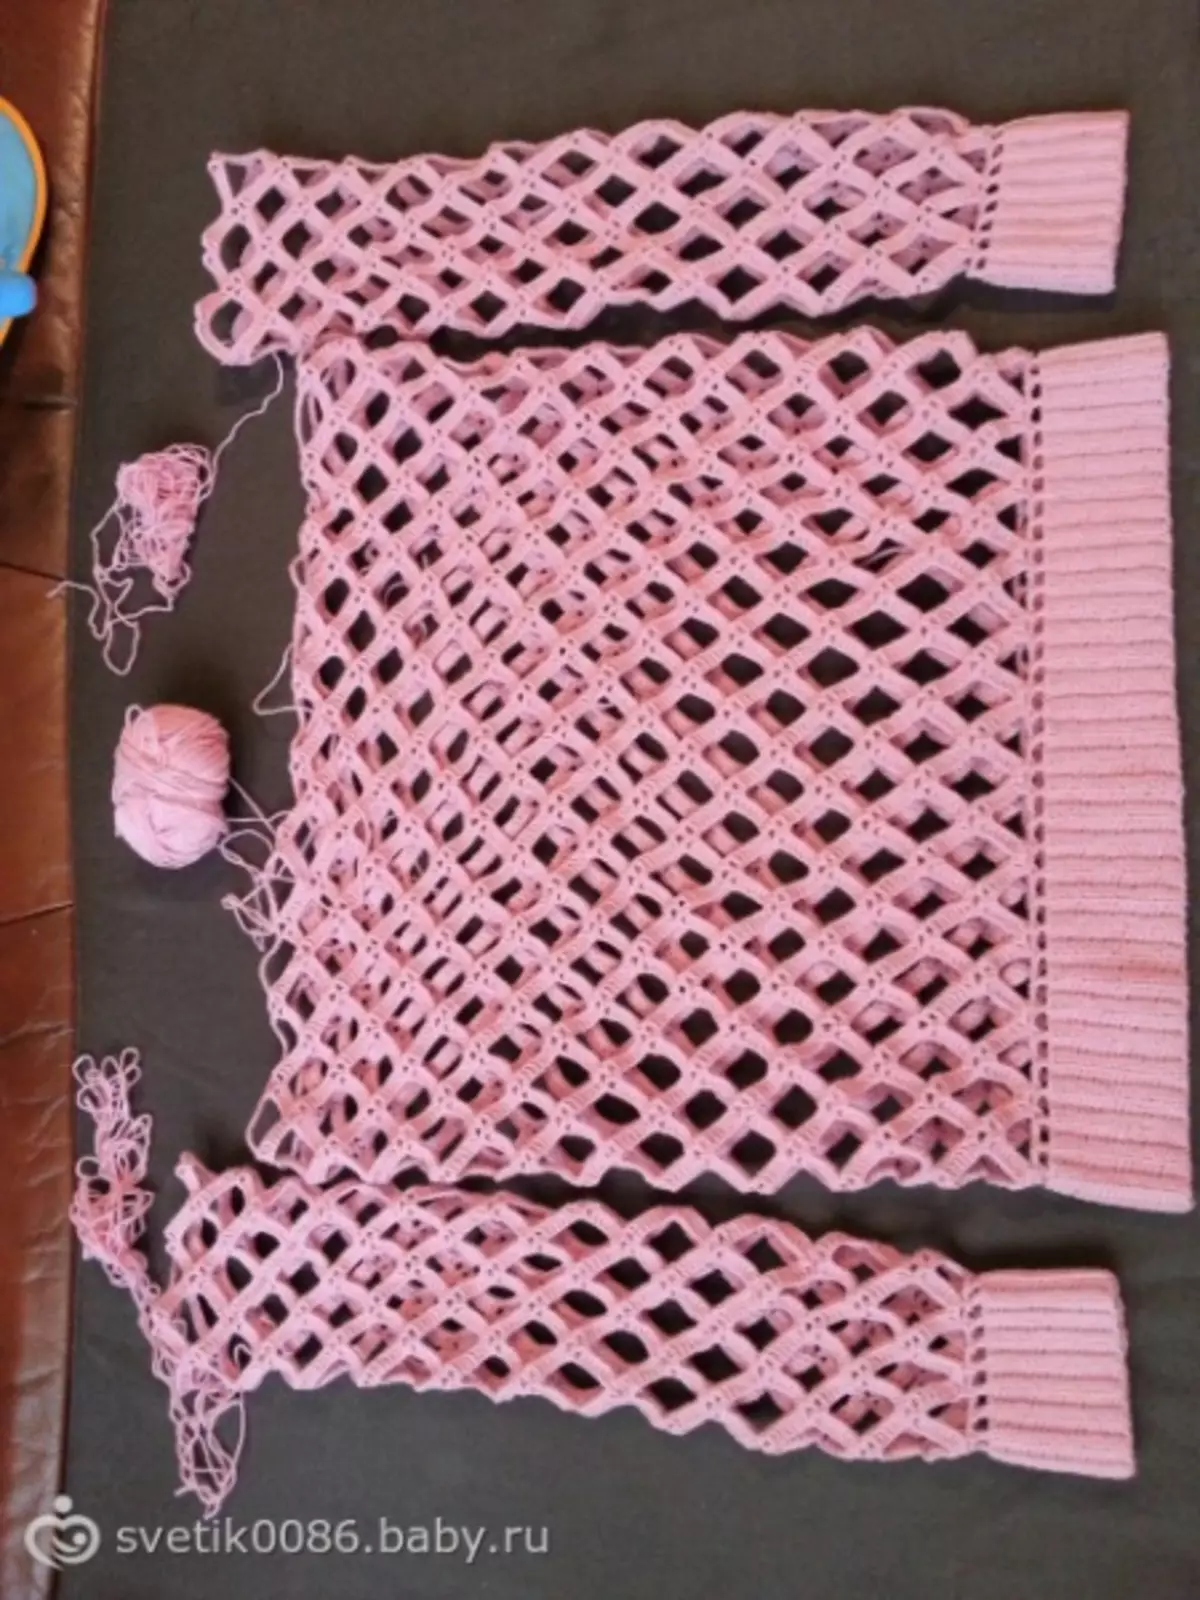 Crochet watterns: رەسىملەر ۋە چۈشەندۈرۈش كوپىز ۋە چۈشەندۈرۈش